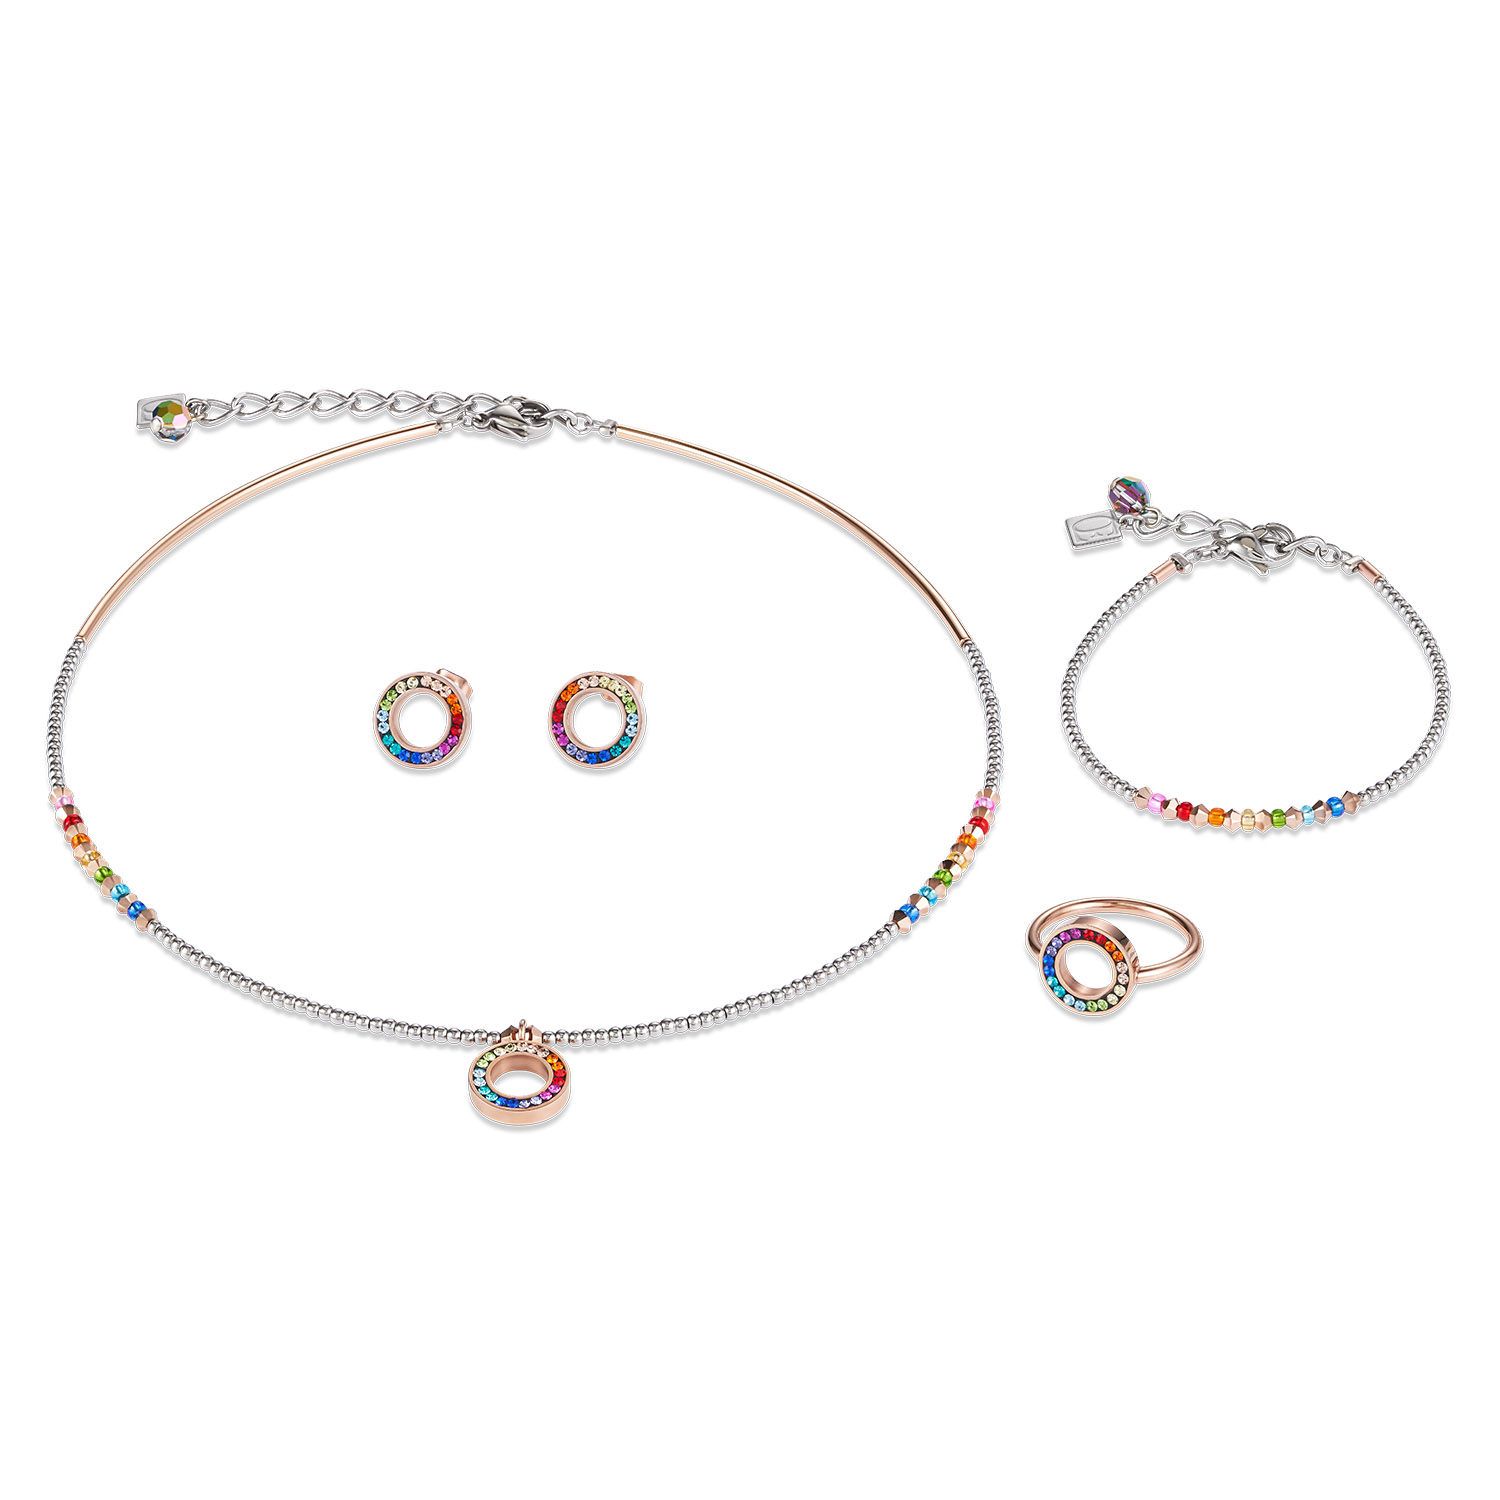 Оптовая продажа OEM/ODM ювелирные изделия Испания на заказ розовое золото серебряное ожерелье кольцо серьги цирконий ювелирные изделия оптом Производители